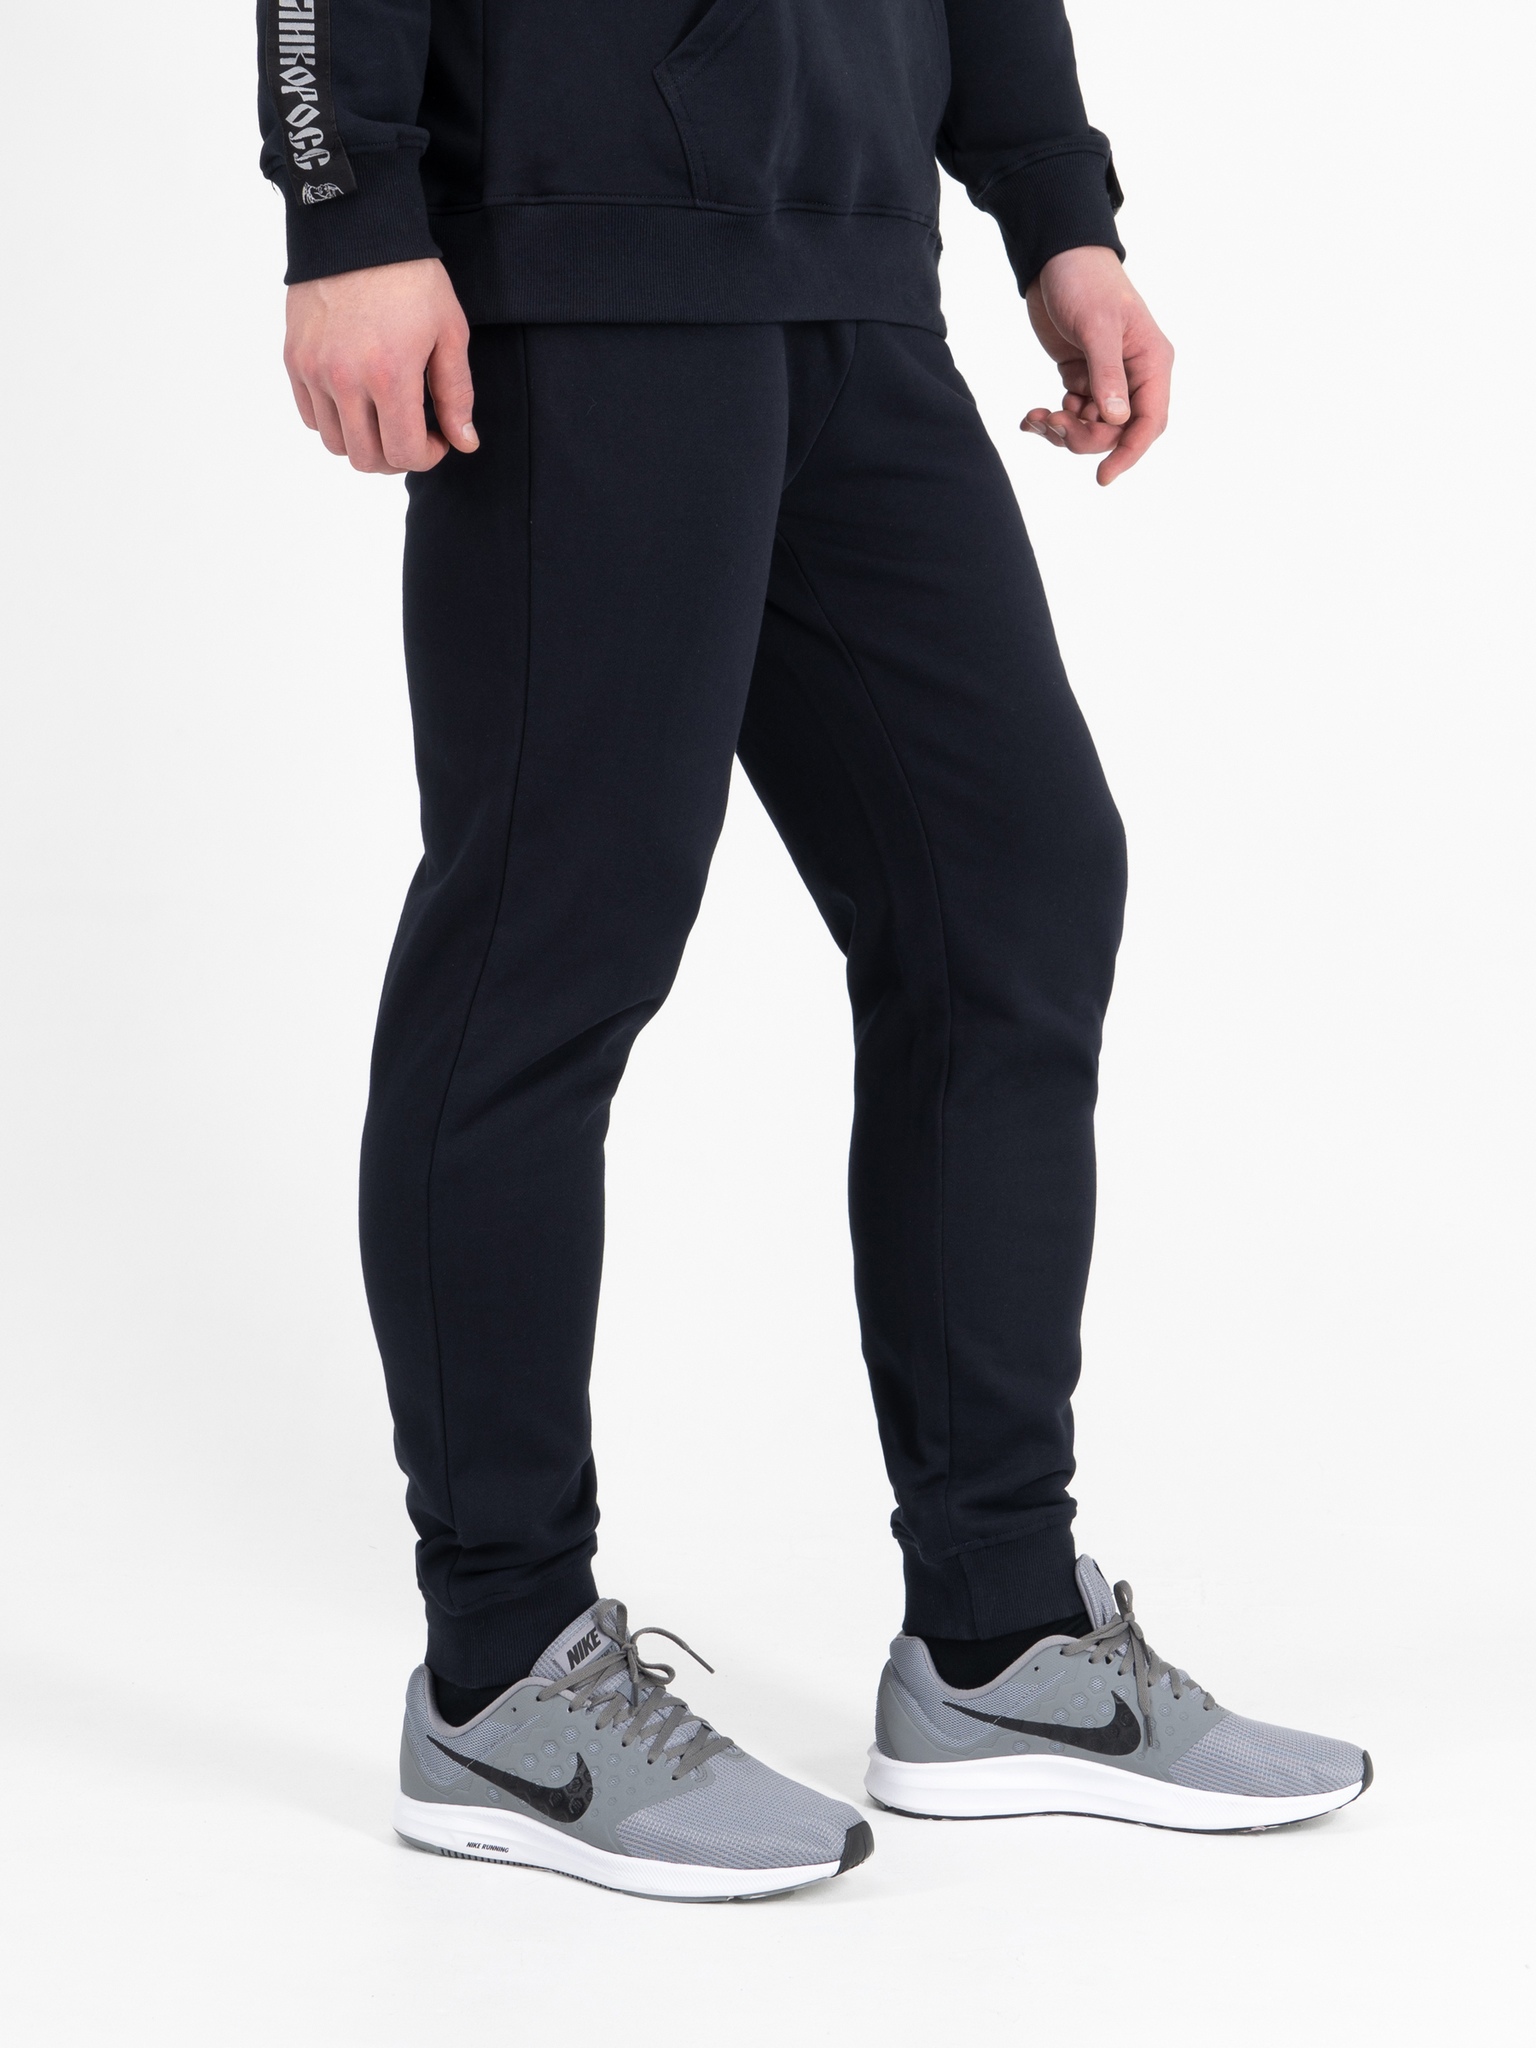 фото Спортивные брюки мужские великоросс bm синие 48 ru